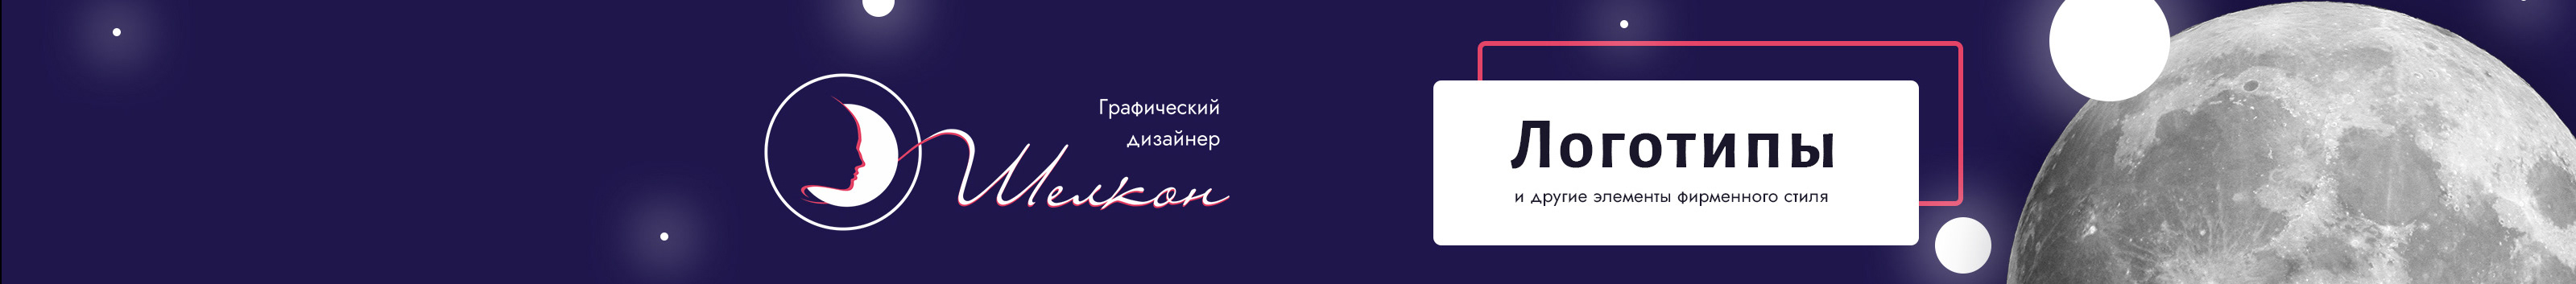 Banner de perfil de Елена Шелкон